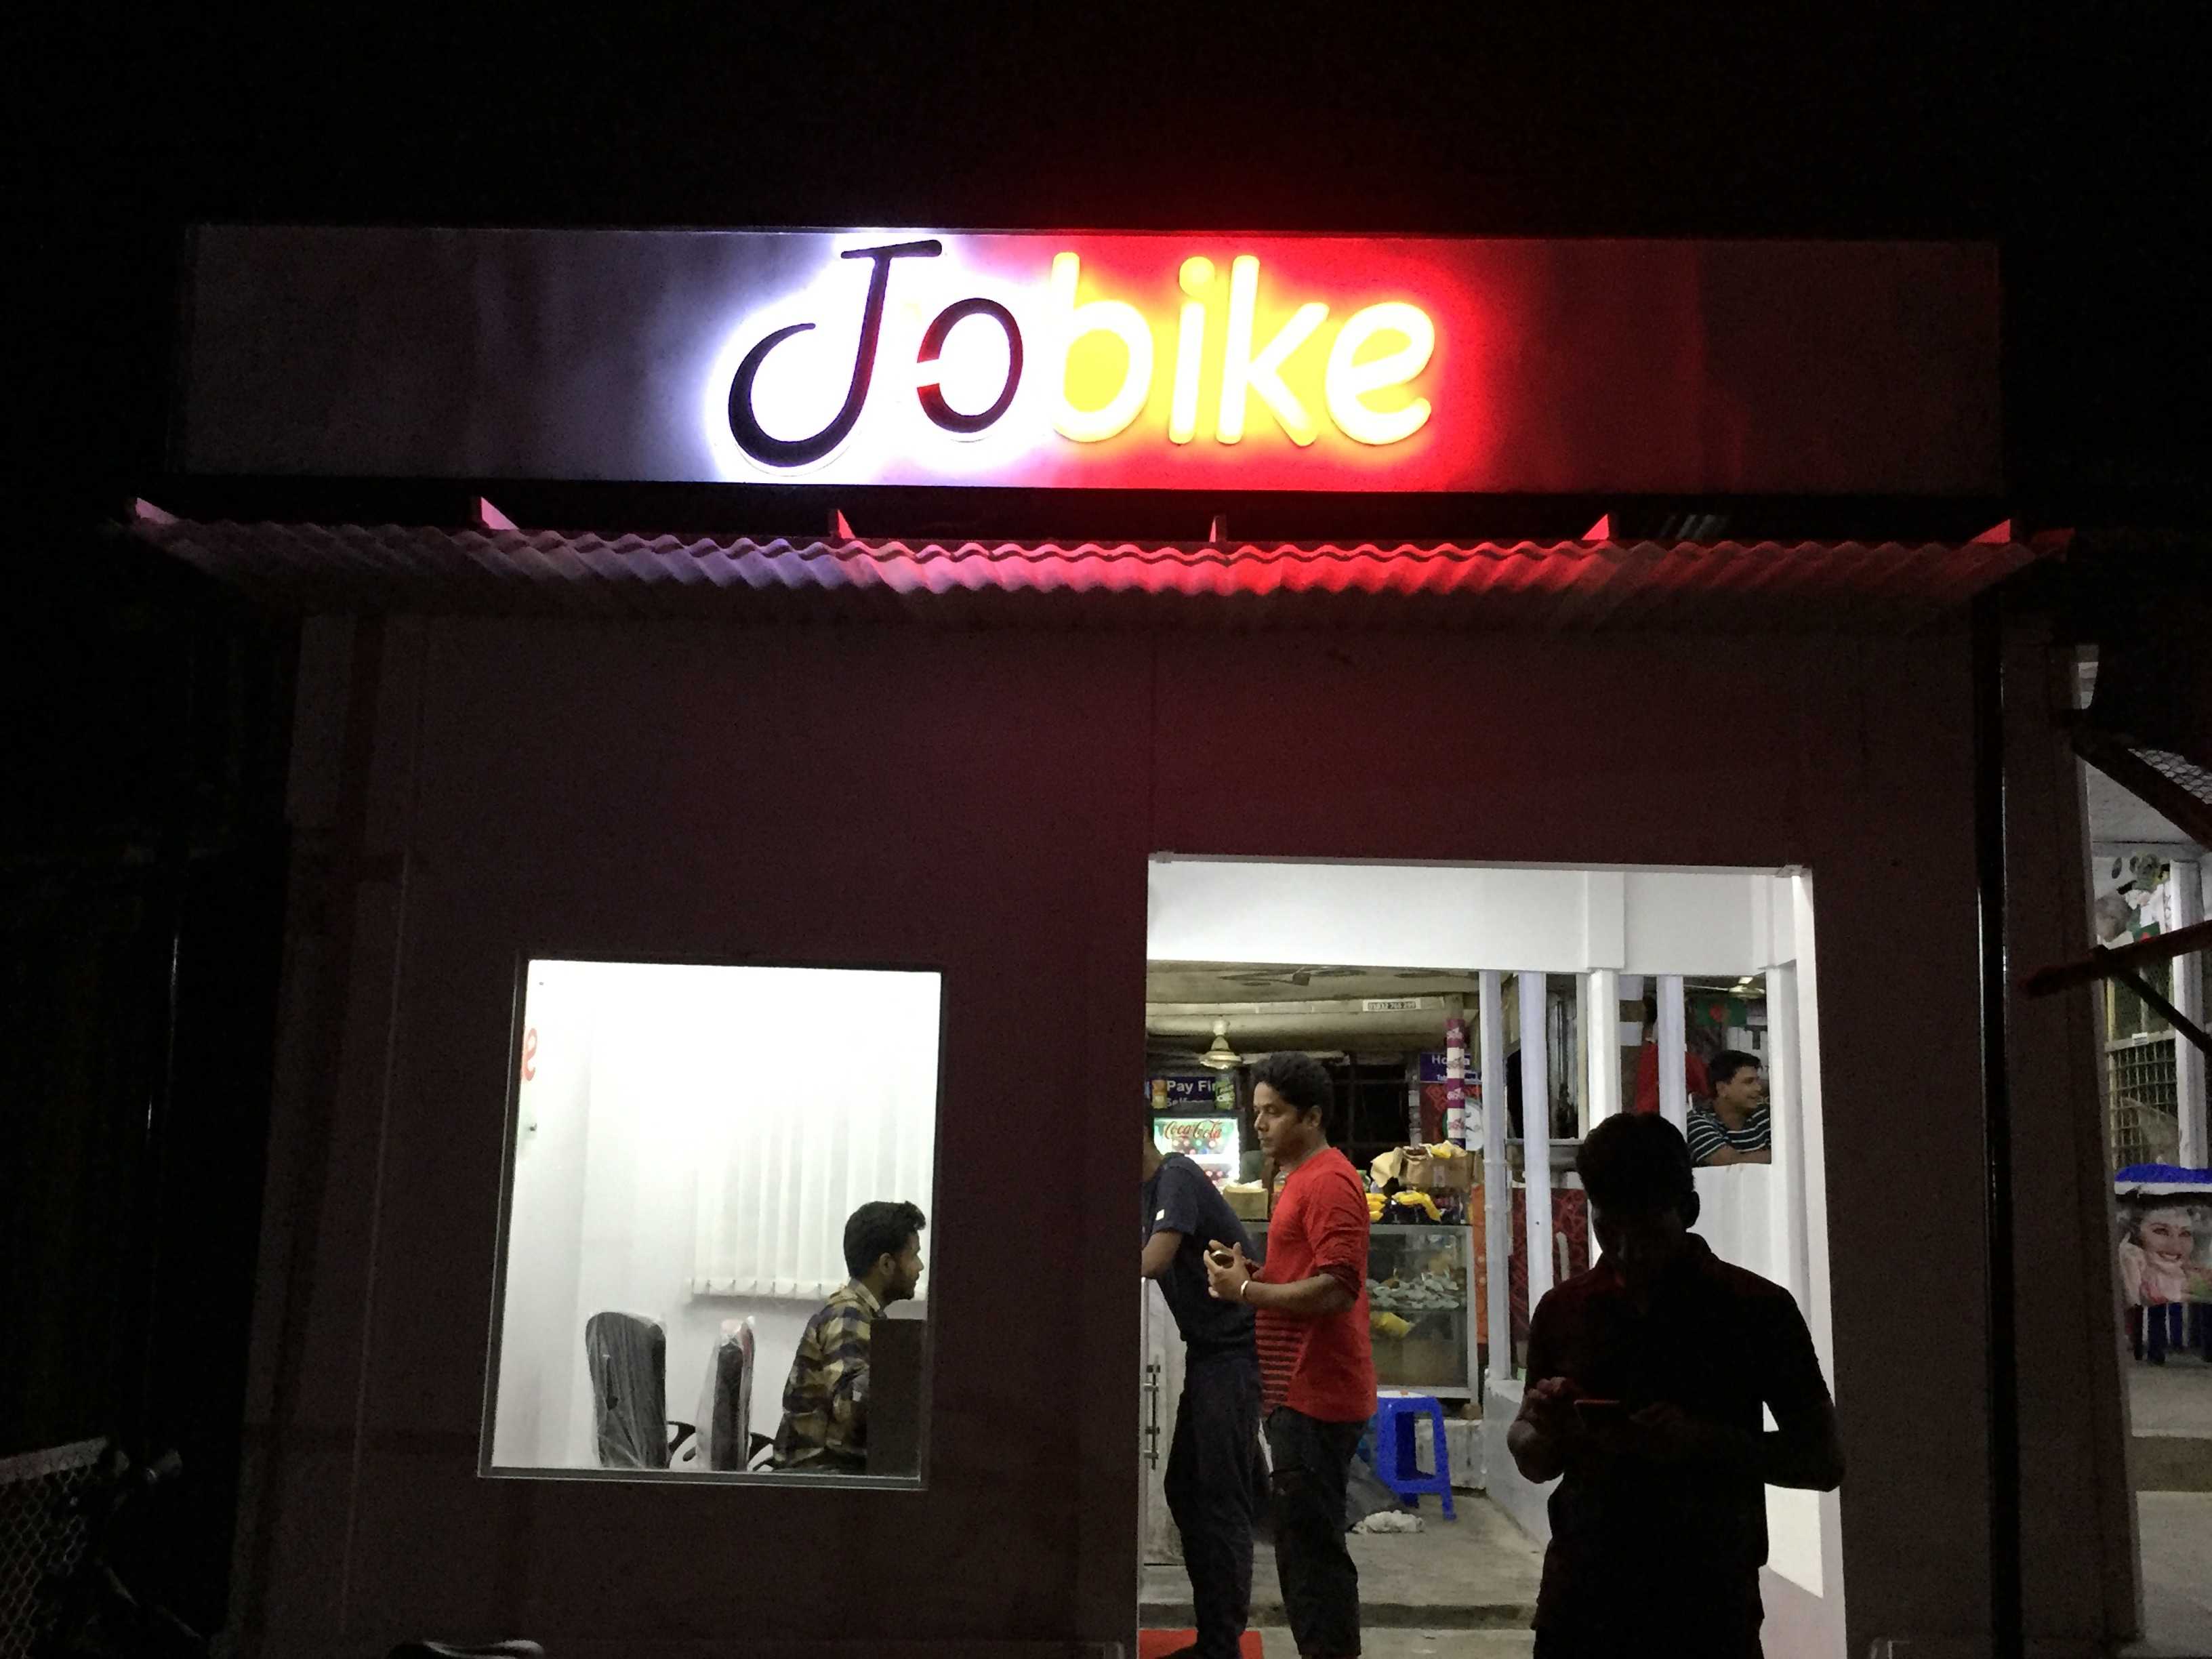 Jobike Outlet at Savar